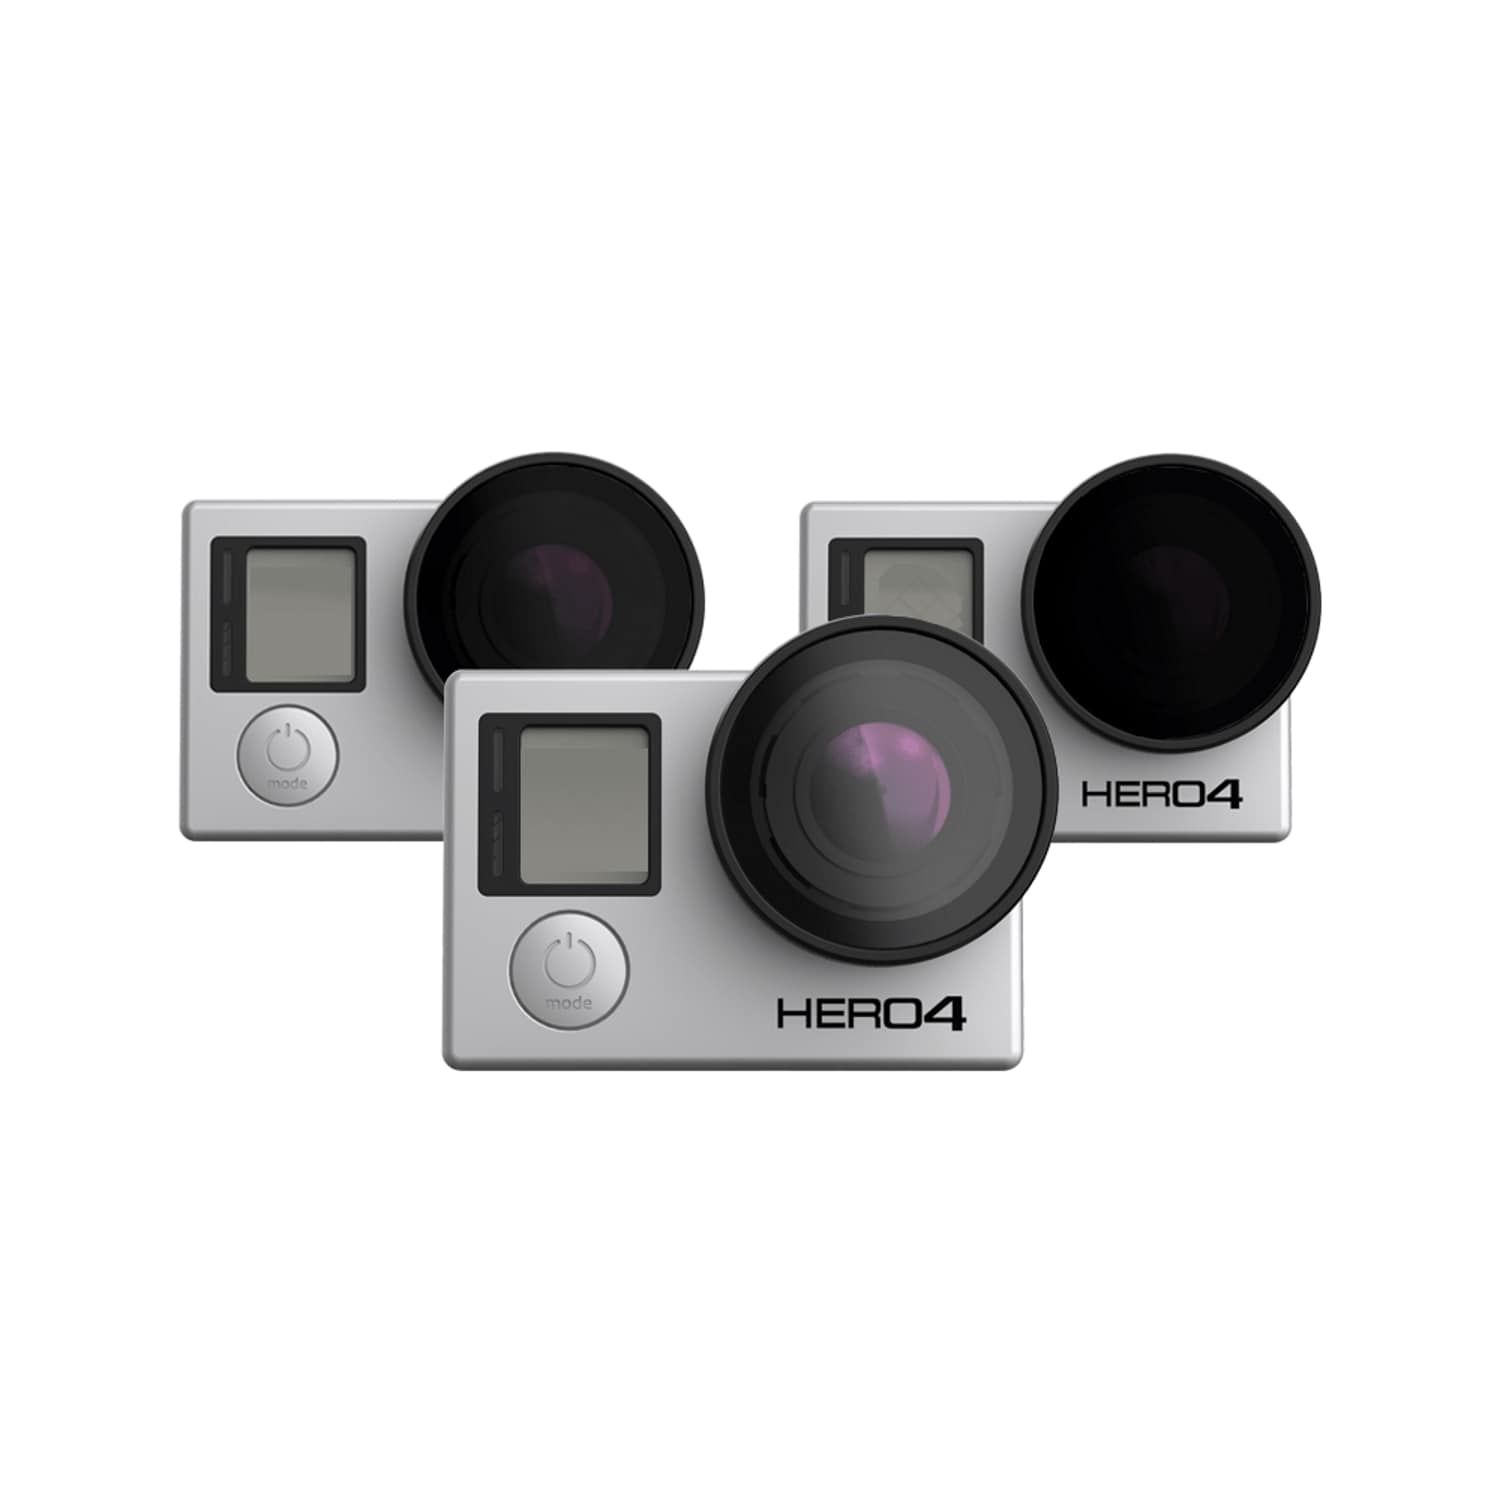 מארז שלישיית פילטרים לרחפן עם מצלמת GoPro - דוגית